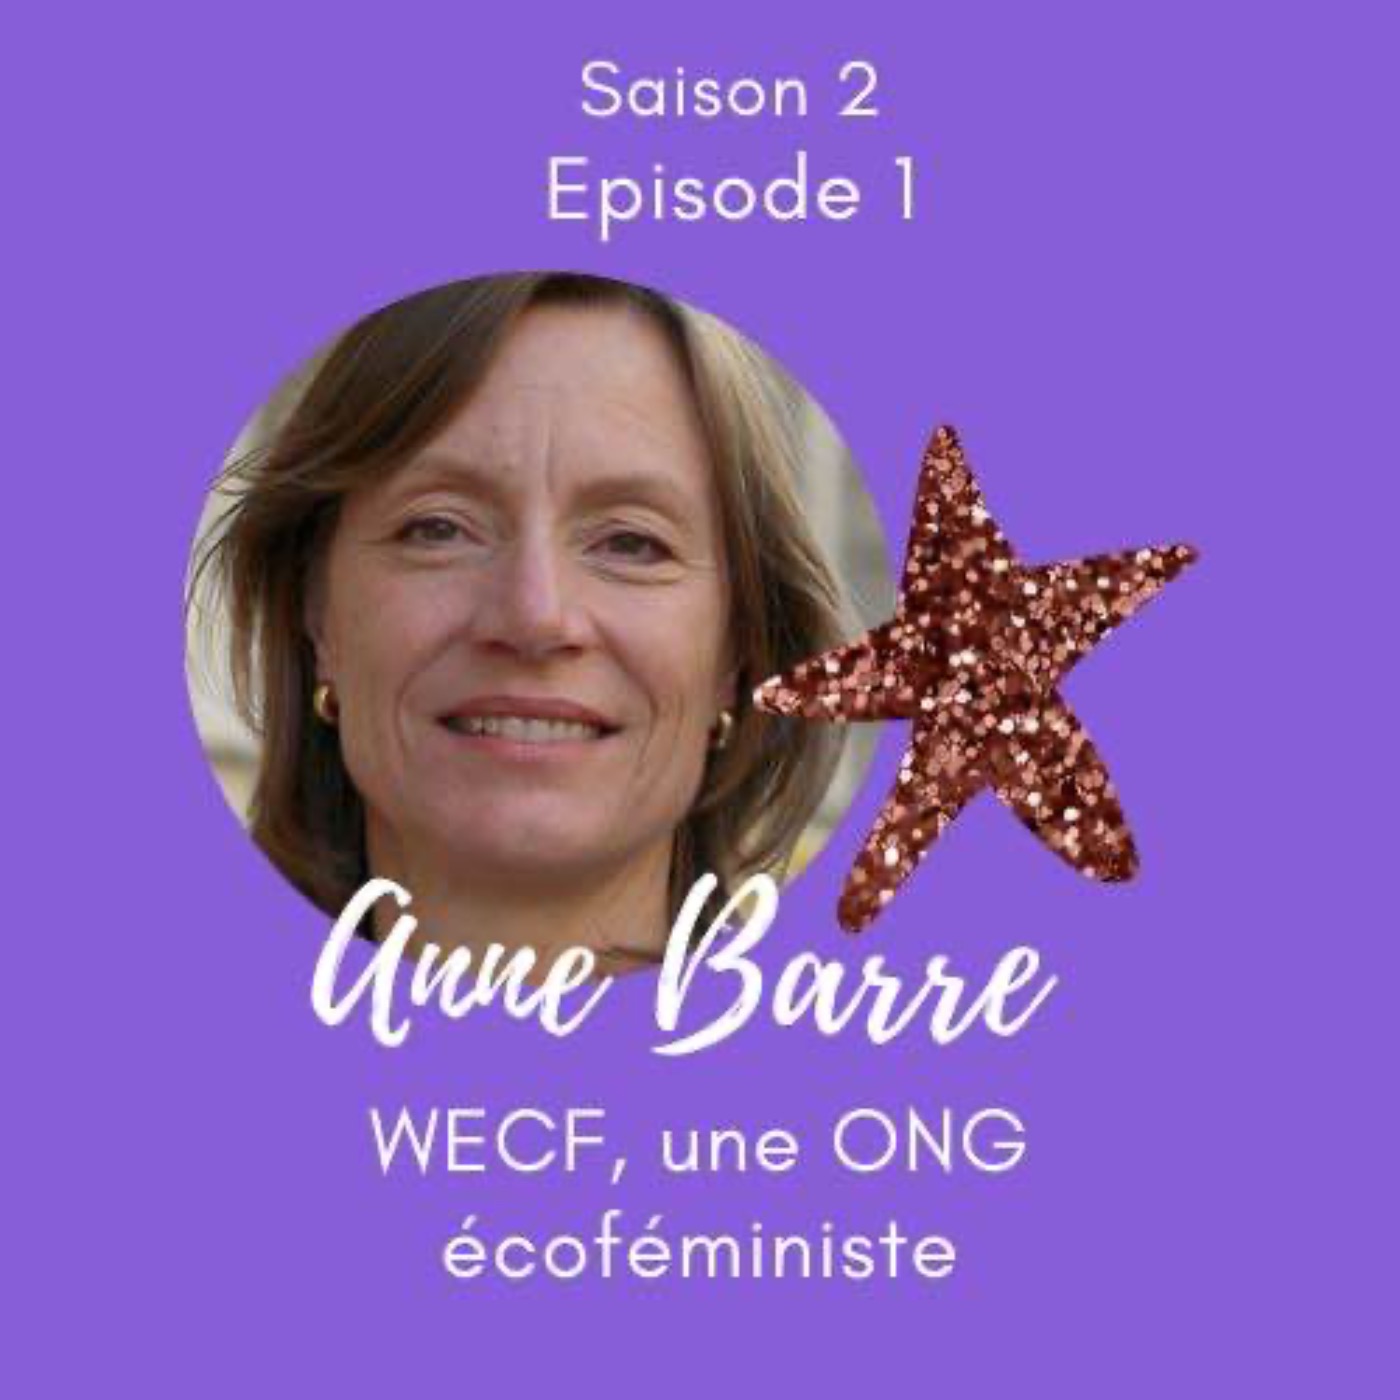 Anne Barre change le monde